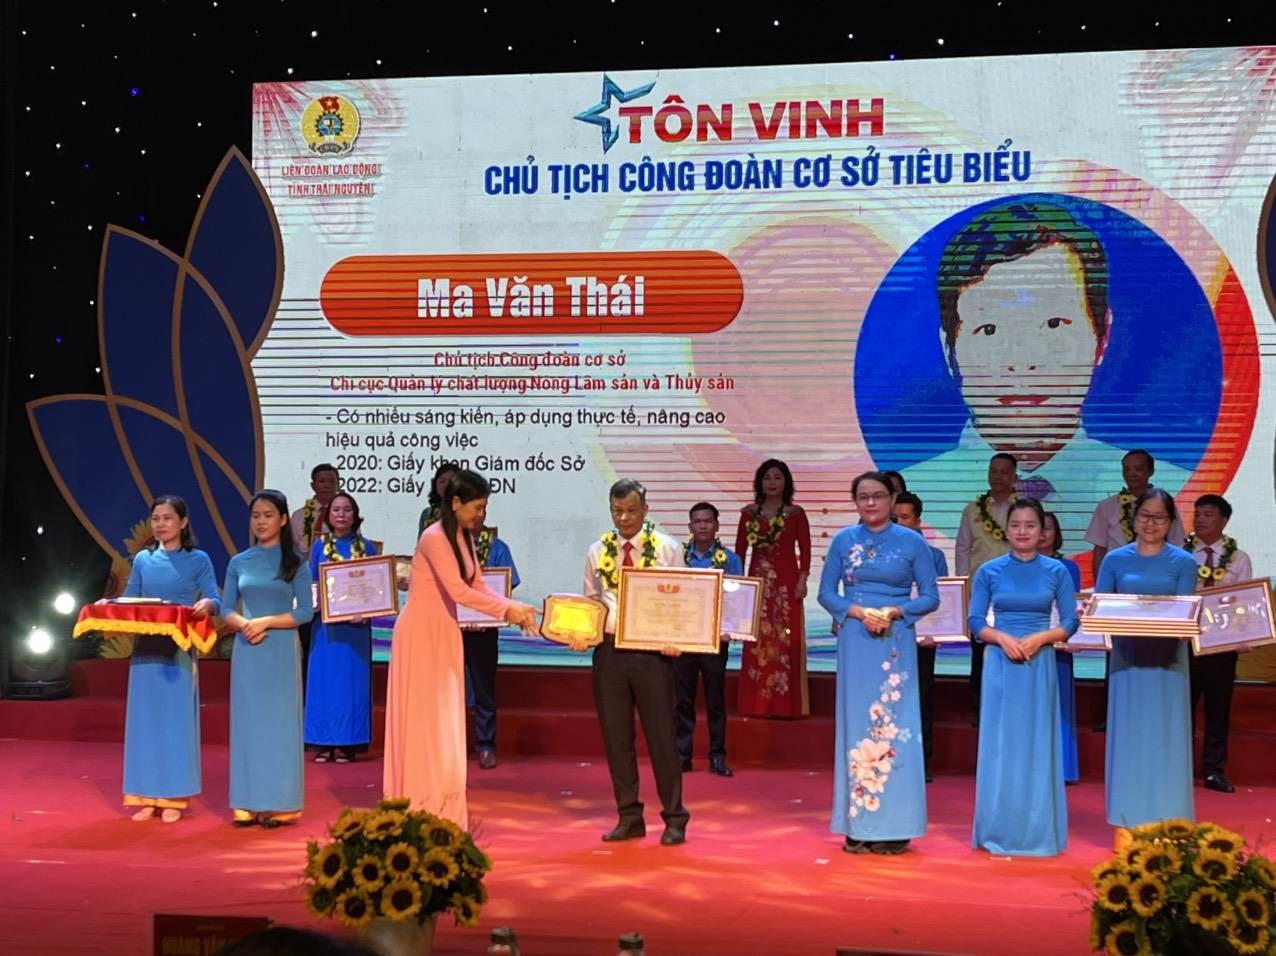 Lãnh đạo tỉnh Thái Nguyên trao bằng khen các Chủ tịch CĐCS tiêu biểu. Ảnh: Minh Hạnh